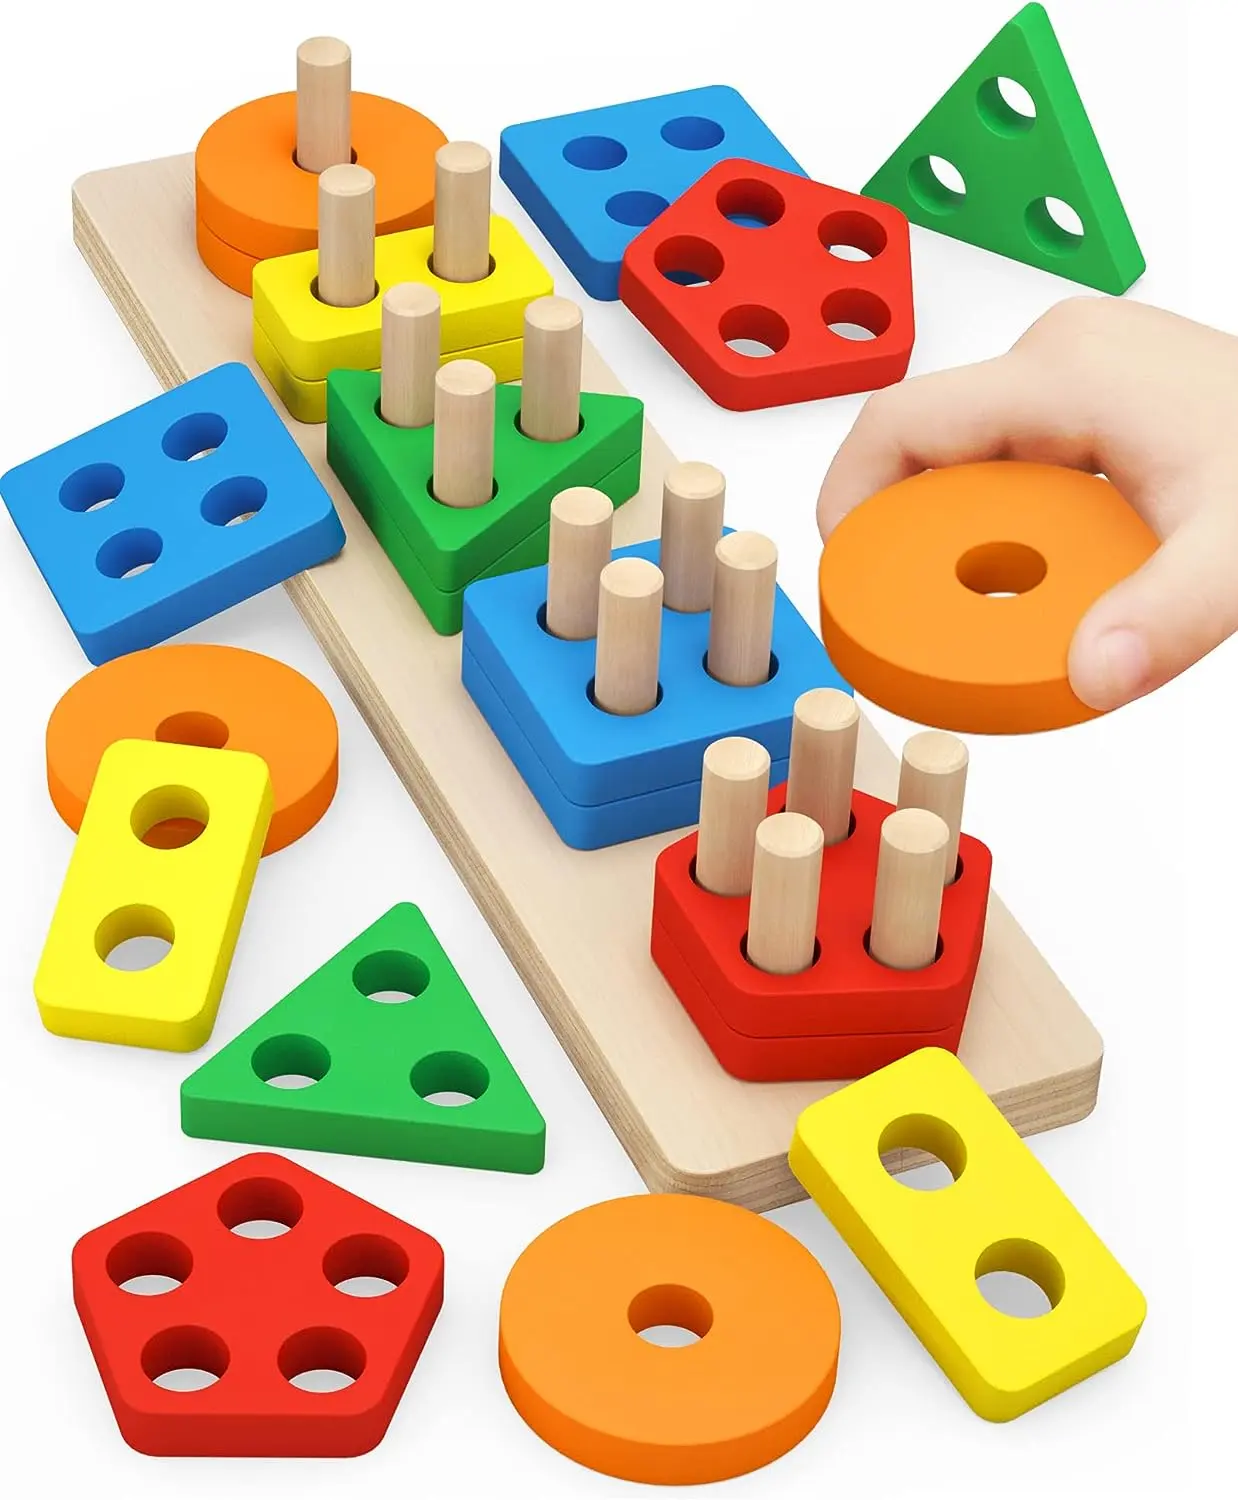 Giocattoli Montessori per bambini da 1 a 3 anni bambini bambini piccoli riconoscimento a colori Stacker forma Sorter giocattolo in legno puzzle regalo